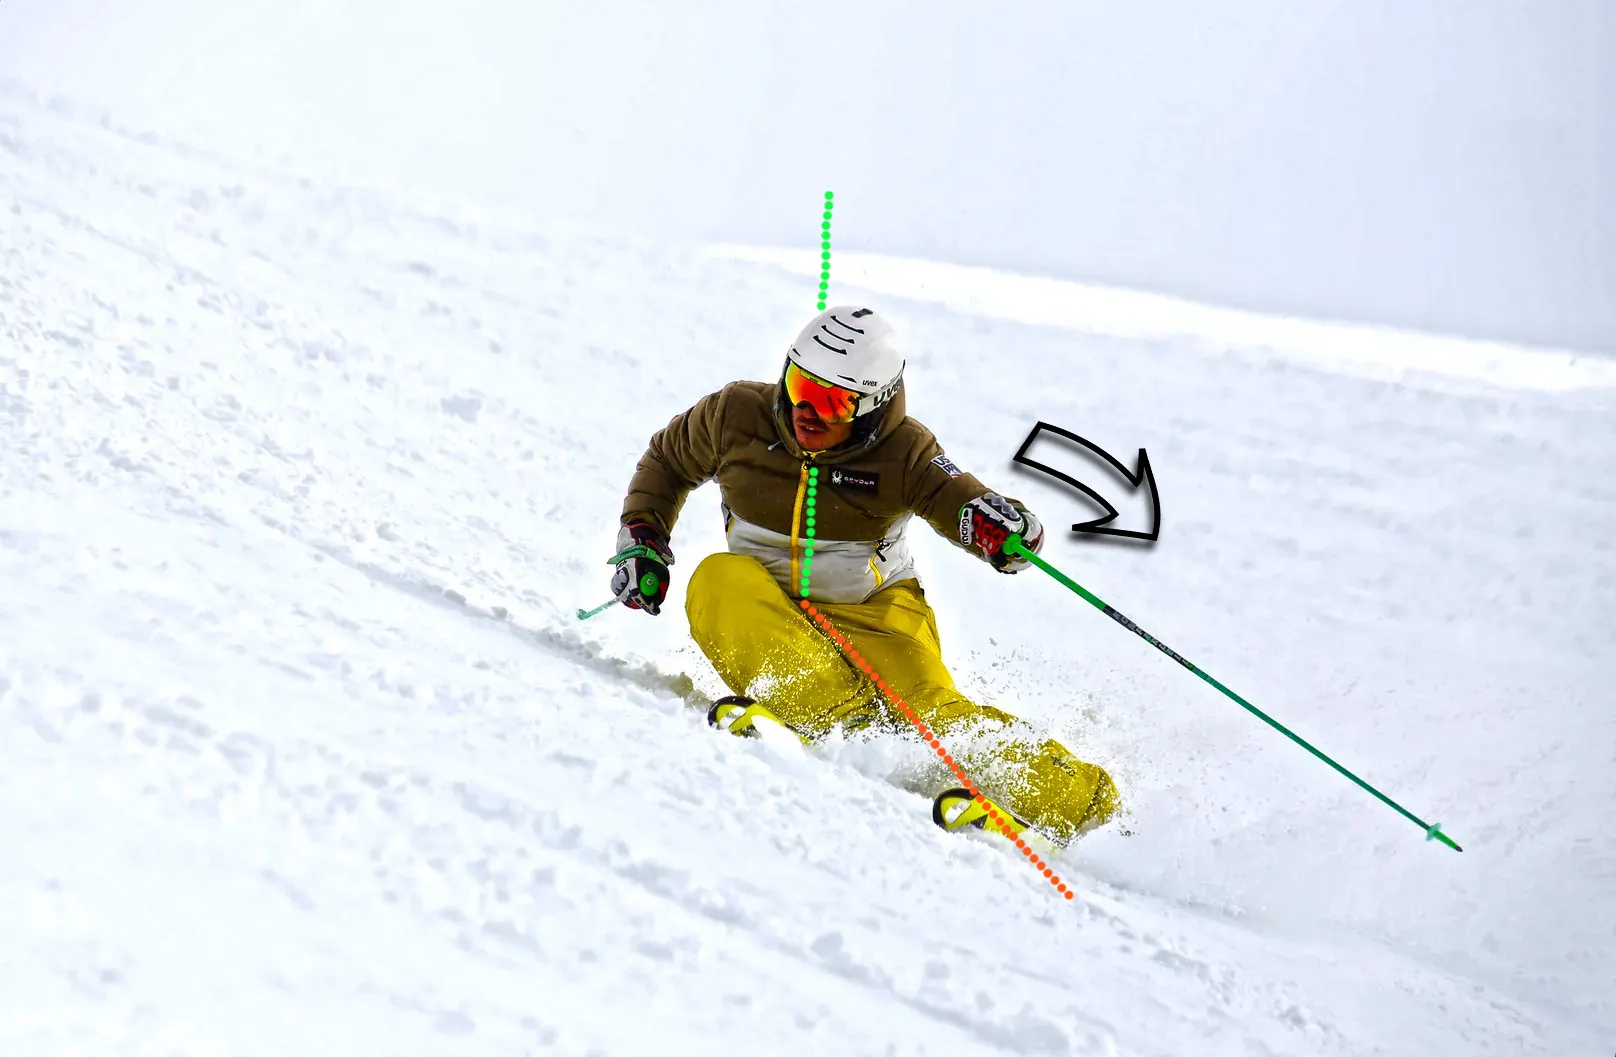 Angulación con el tronco durante la esquiada en pendiente, con lineas y flechas